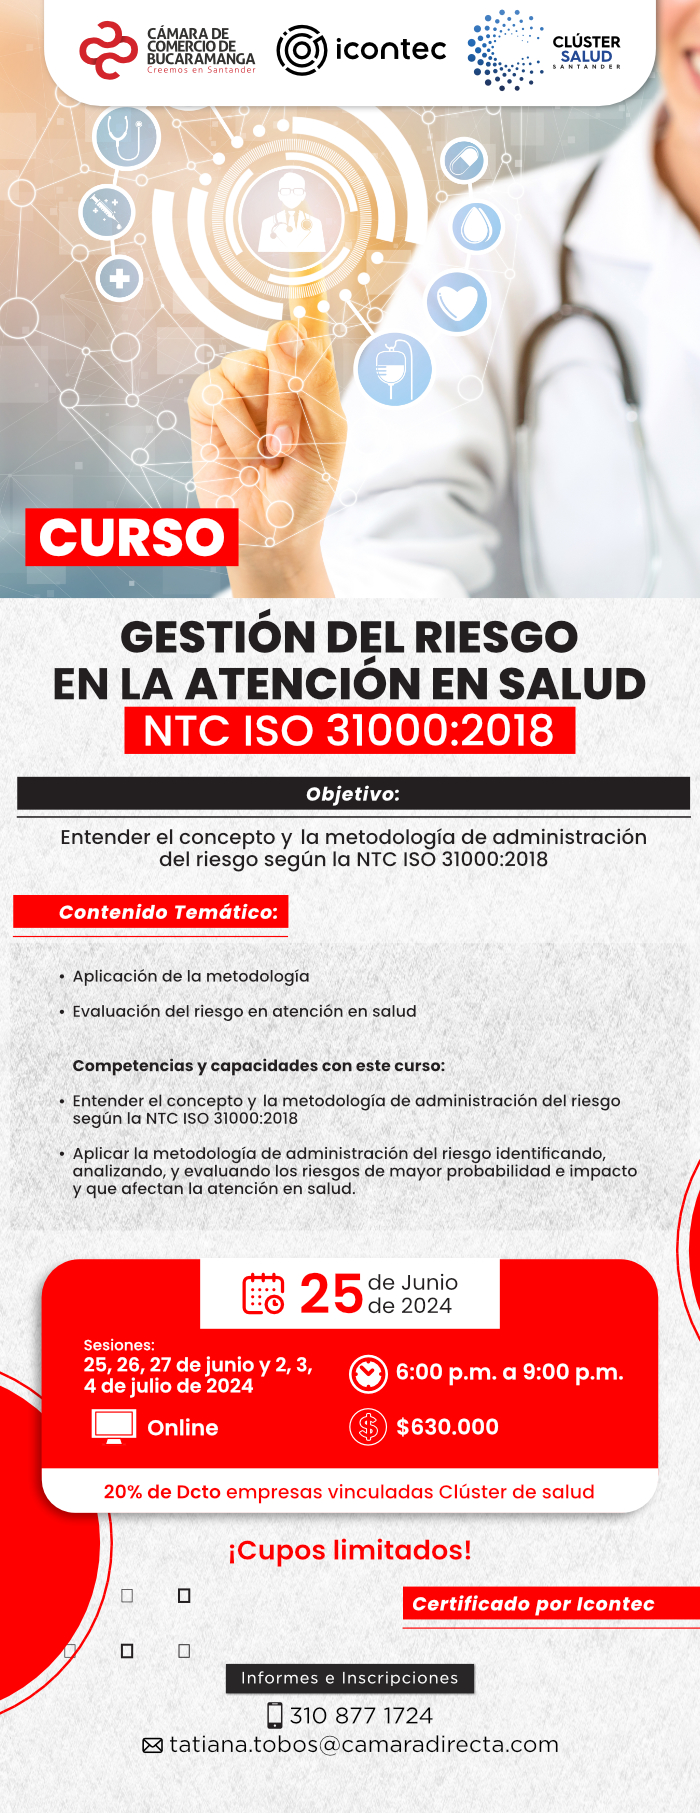 CURSO GESTION DEL RIESGO EN LA ATENCION EN SALUD NTC ISO 31000:2018- 16 